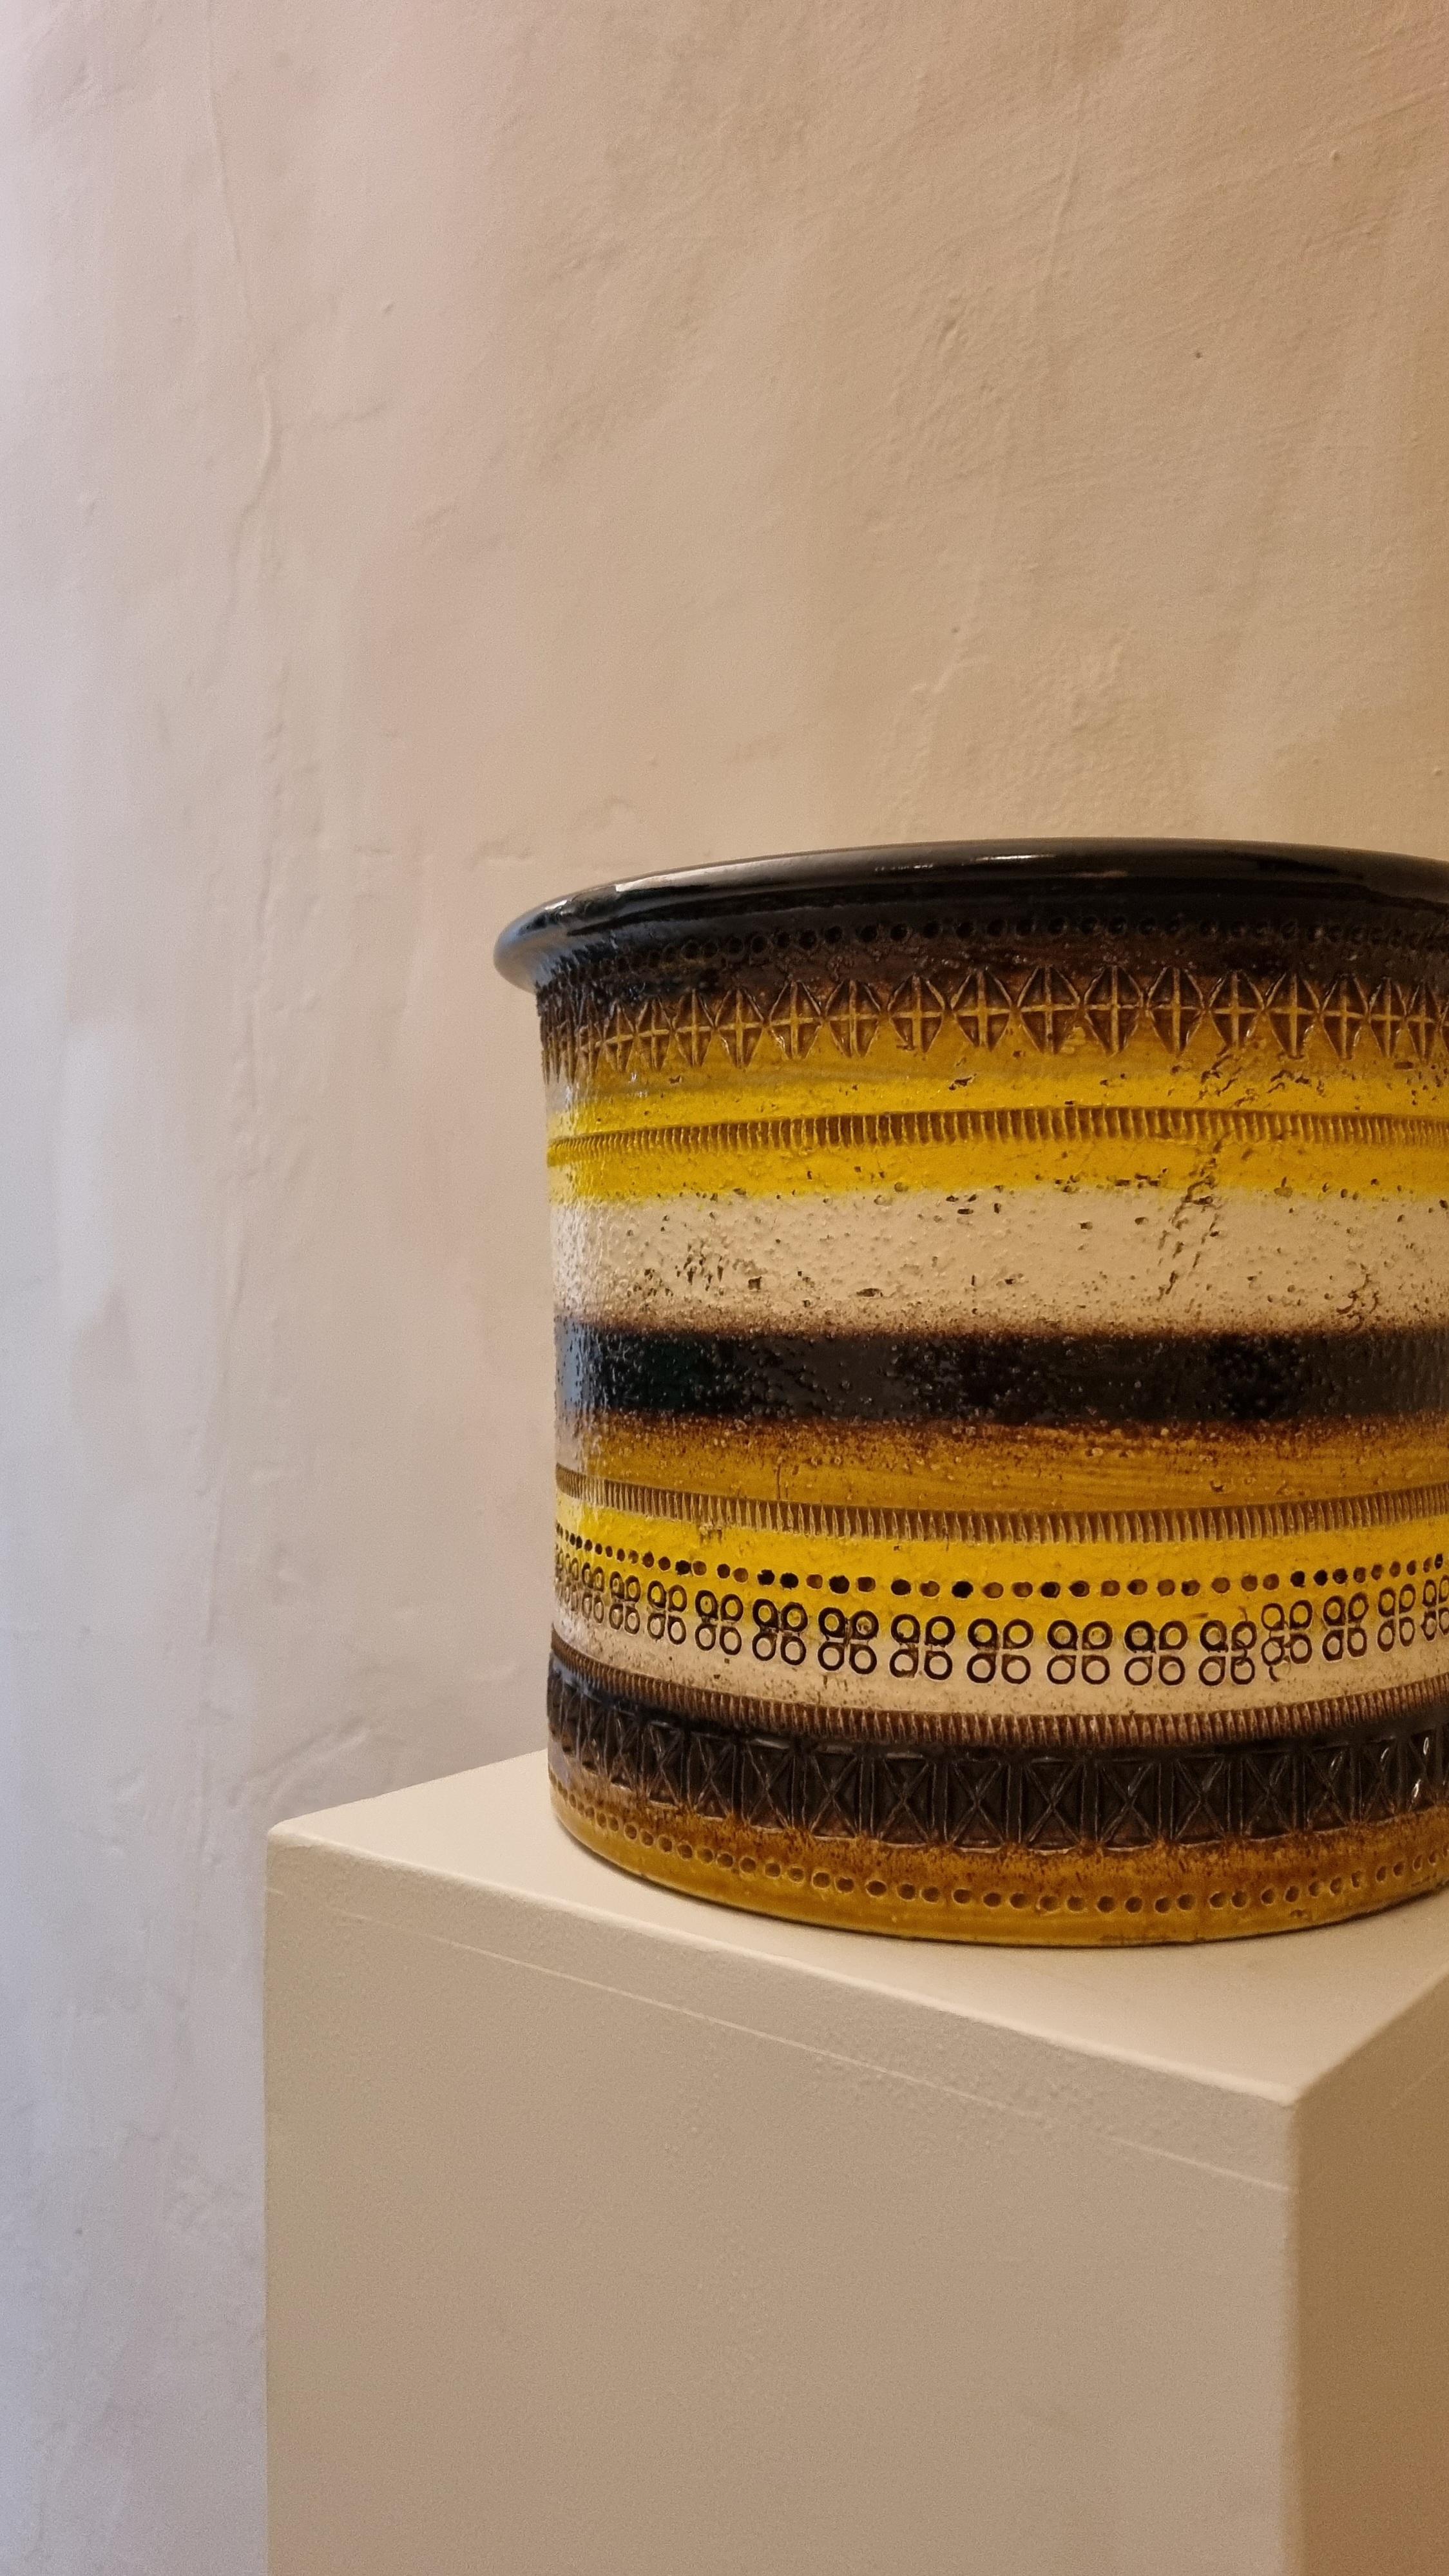 Rimini Pflanzgefäß aus Keramik  von Aldo Londi für Ceramiche Bitossi Montelupo, 70er Jahre.
Terrakotta, malerische Verzierung.
Jedes von Bitossi geschaffene Werk folgt einem sehr komplexen Arbeitsprozess, sowohl im formalen als auch im dekorativen